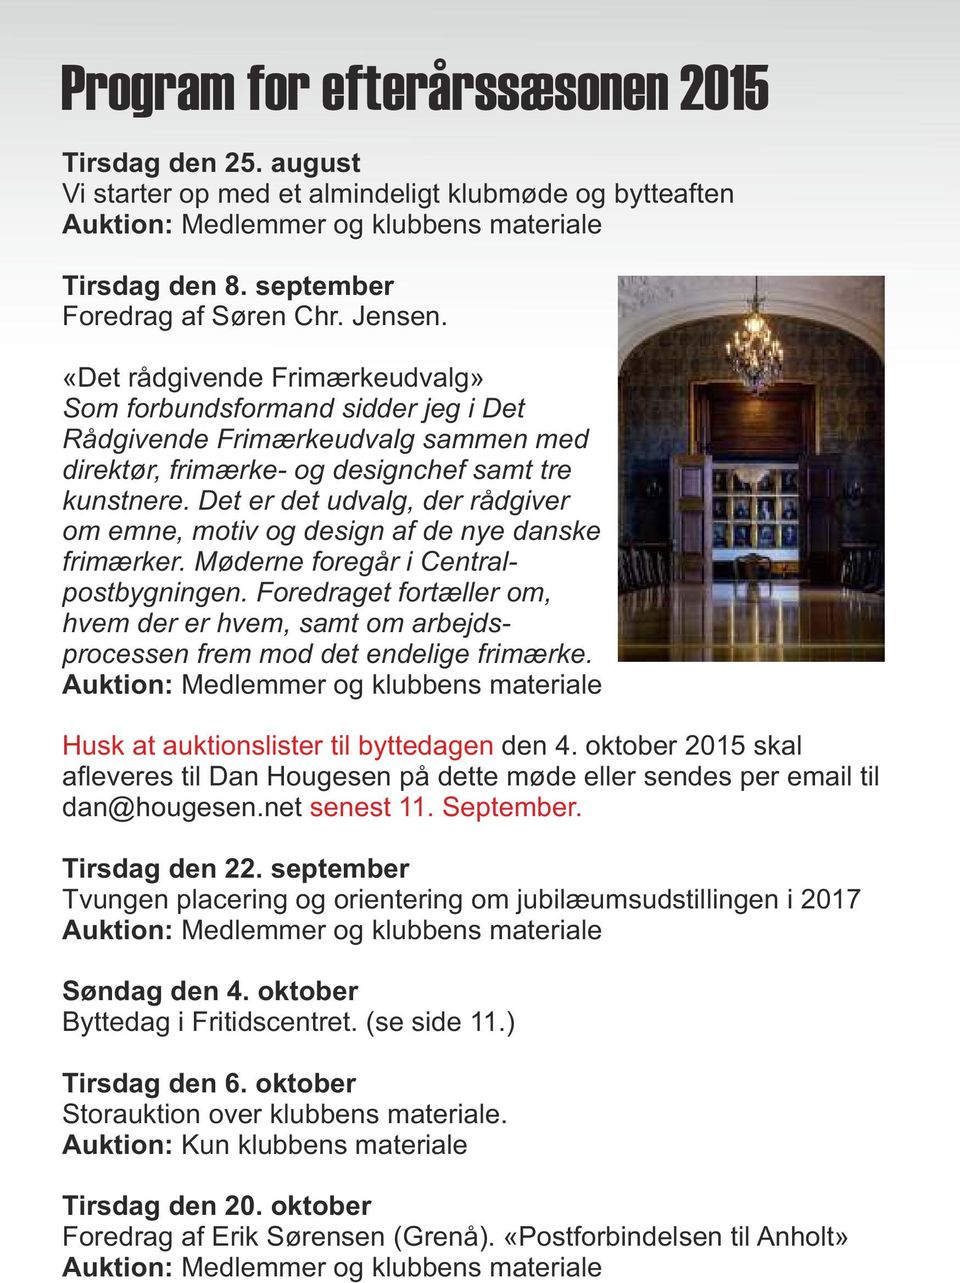 Det er det udvalg, der rådgiver om emne, motiv og design af de nye danske frimærker. Møderne foregår i Centralpostbygningen.